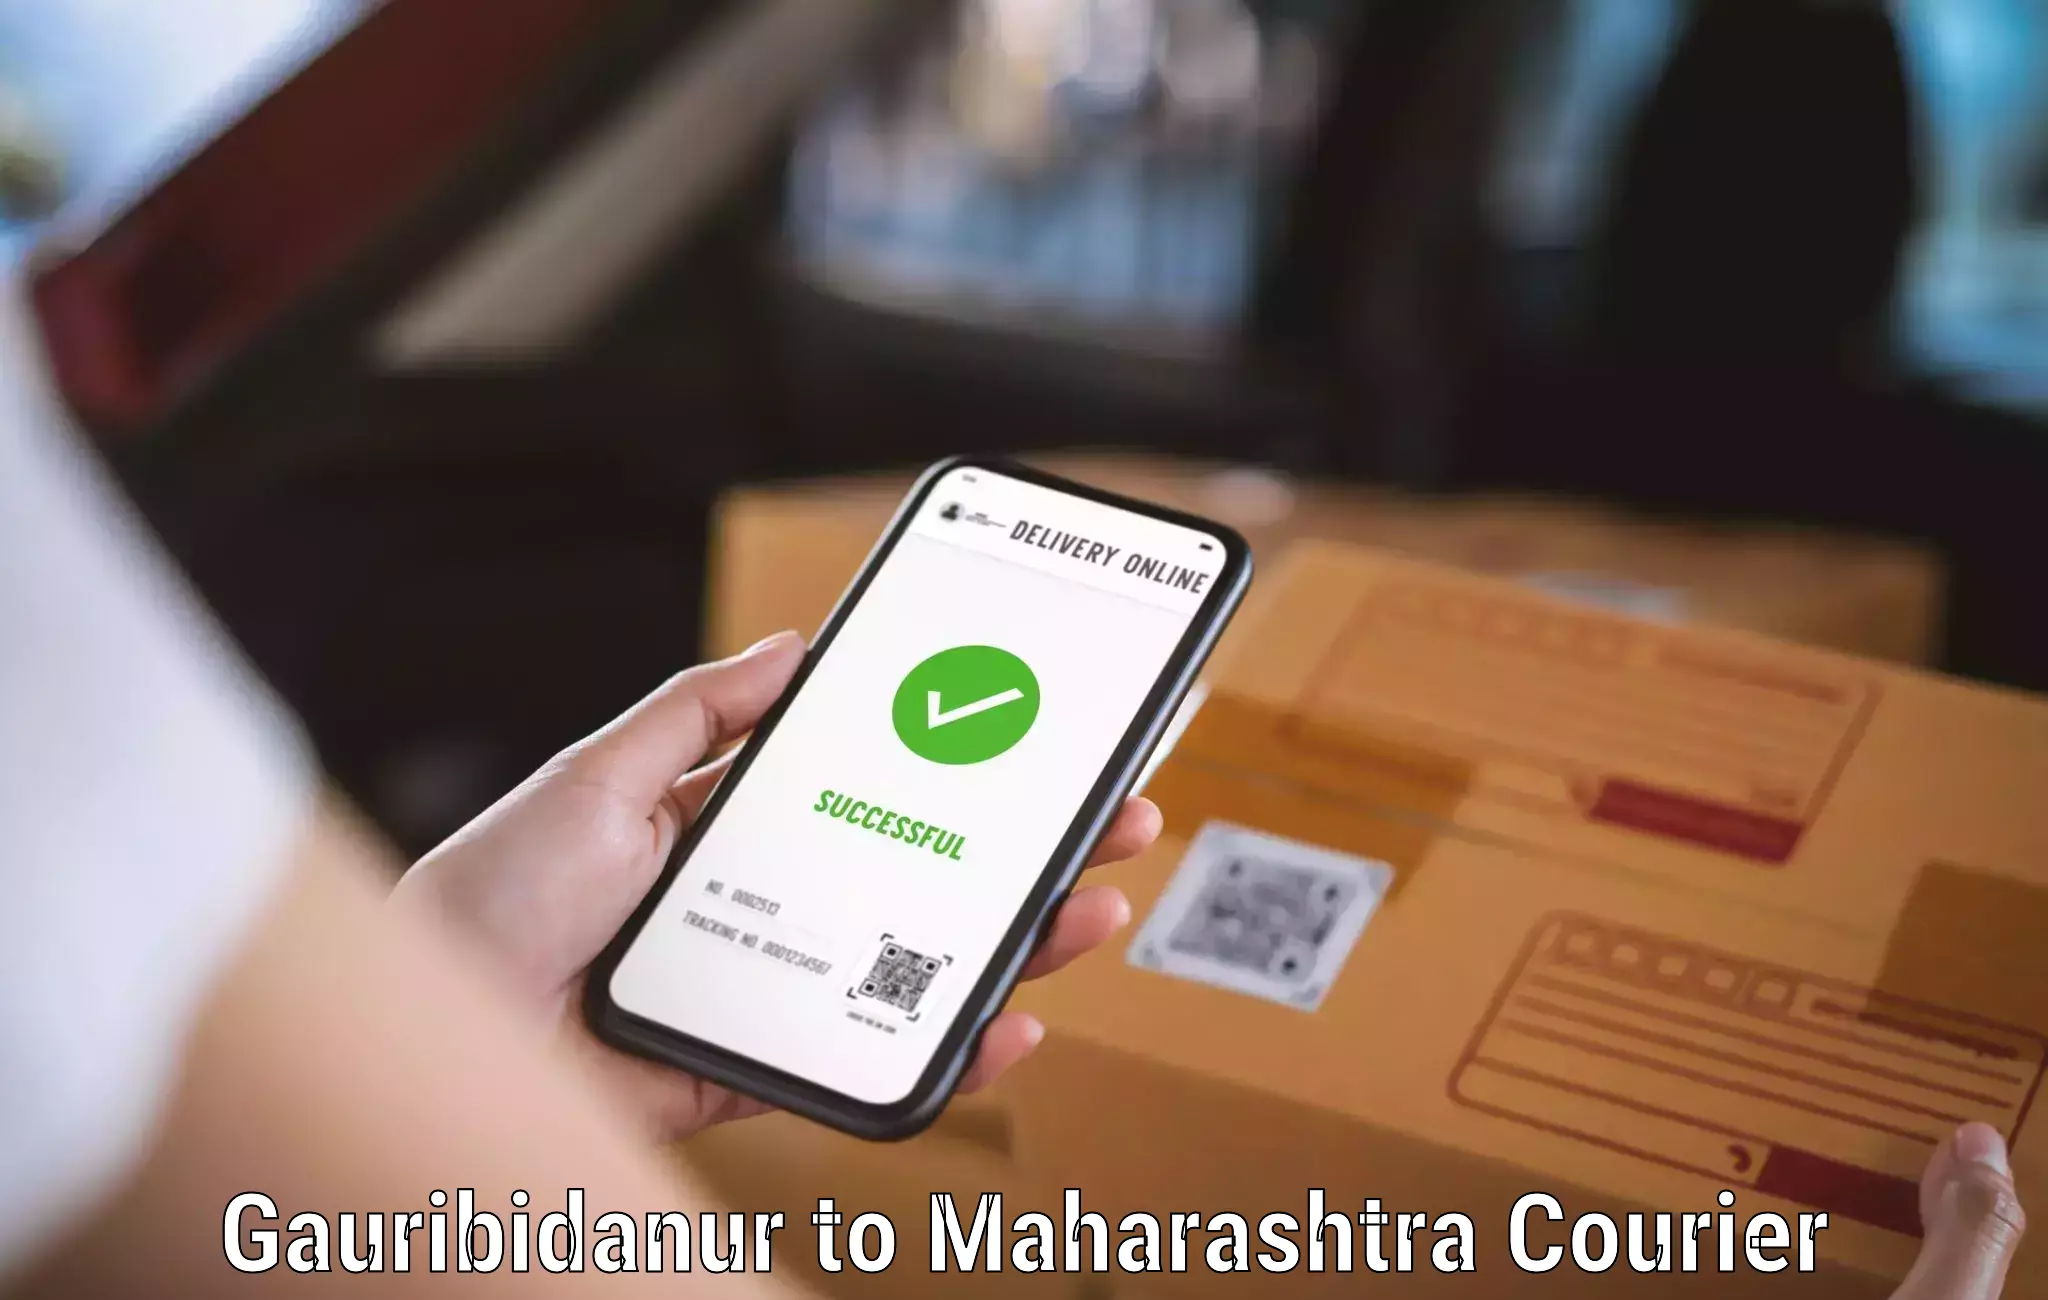 Local delivery service Gauribidanur to Walchandnagar